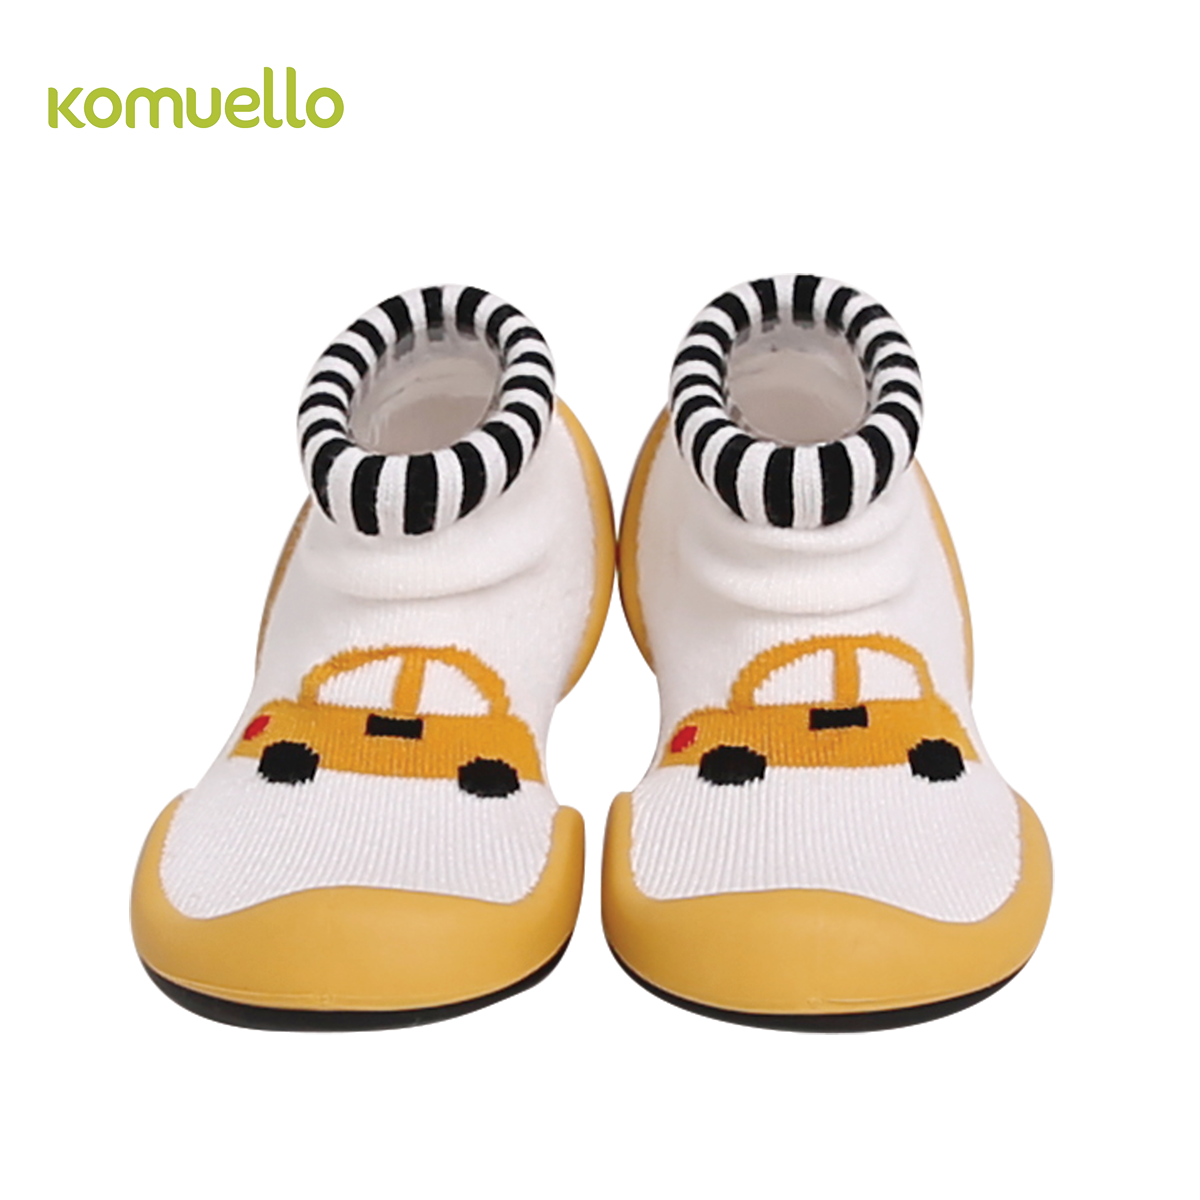 Komuello - รองเท้าเด็กหัดเดิน รองเท้าเด็ก ลาย Road Trip สีเหลือง กระชับ นุ่ม ใส่สบาย ระบายอากาศ